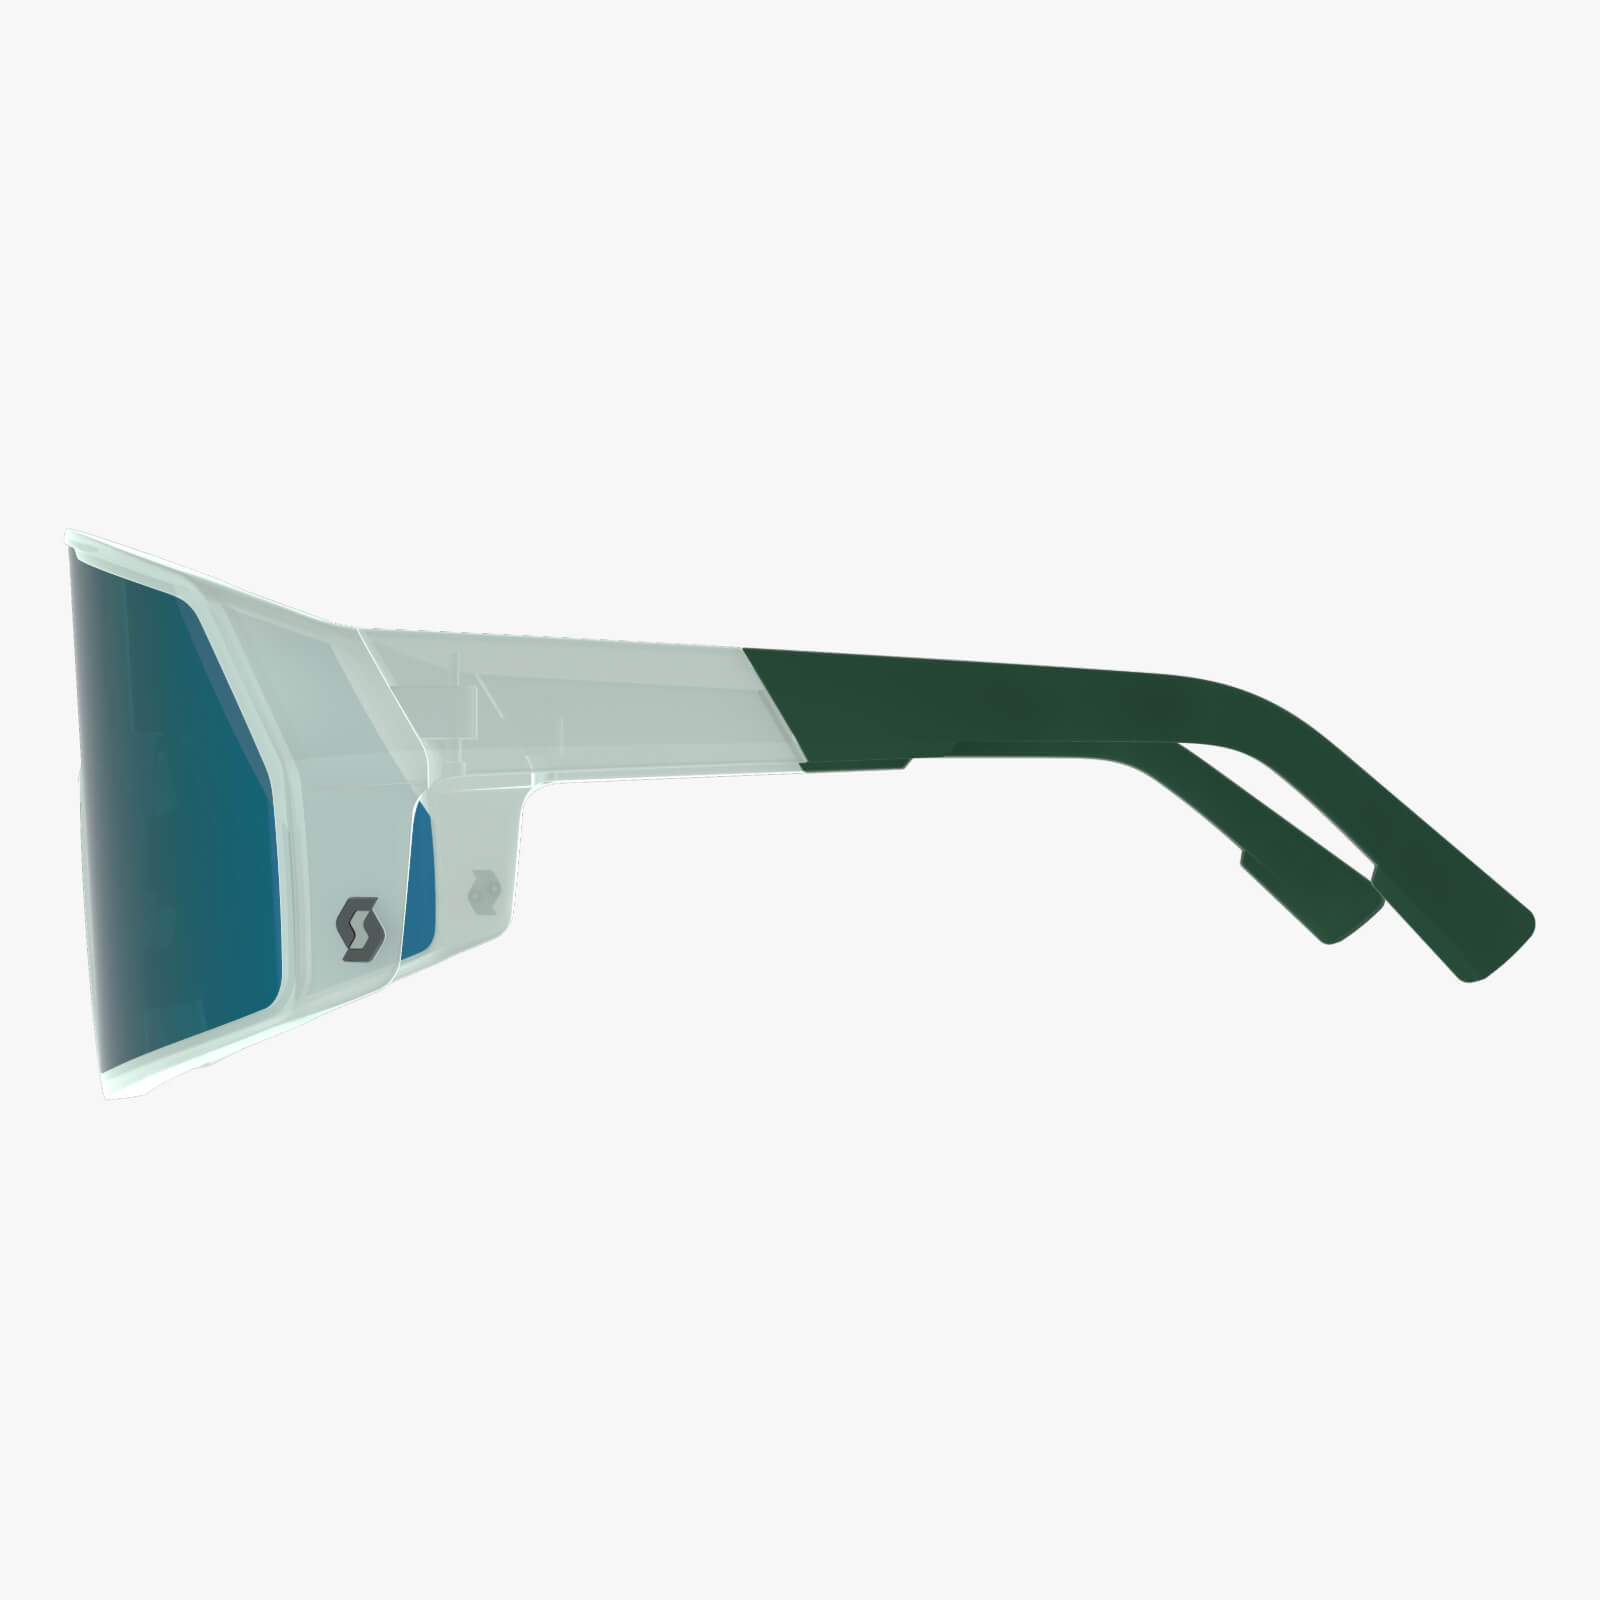 parte lateral do óculos de ciclismo scott pro shield